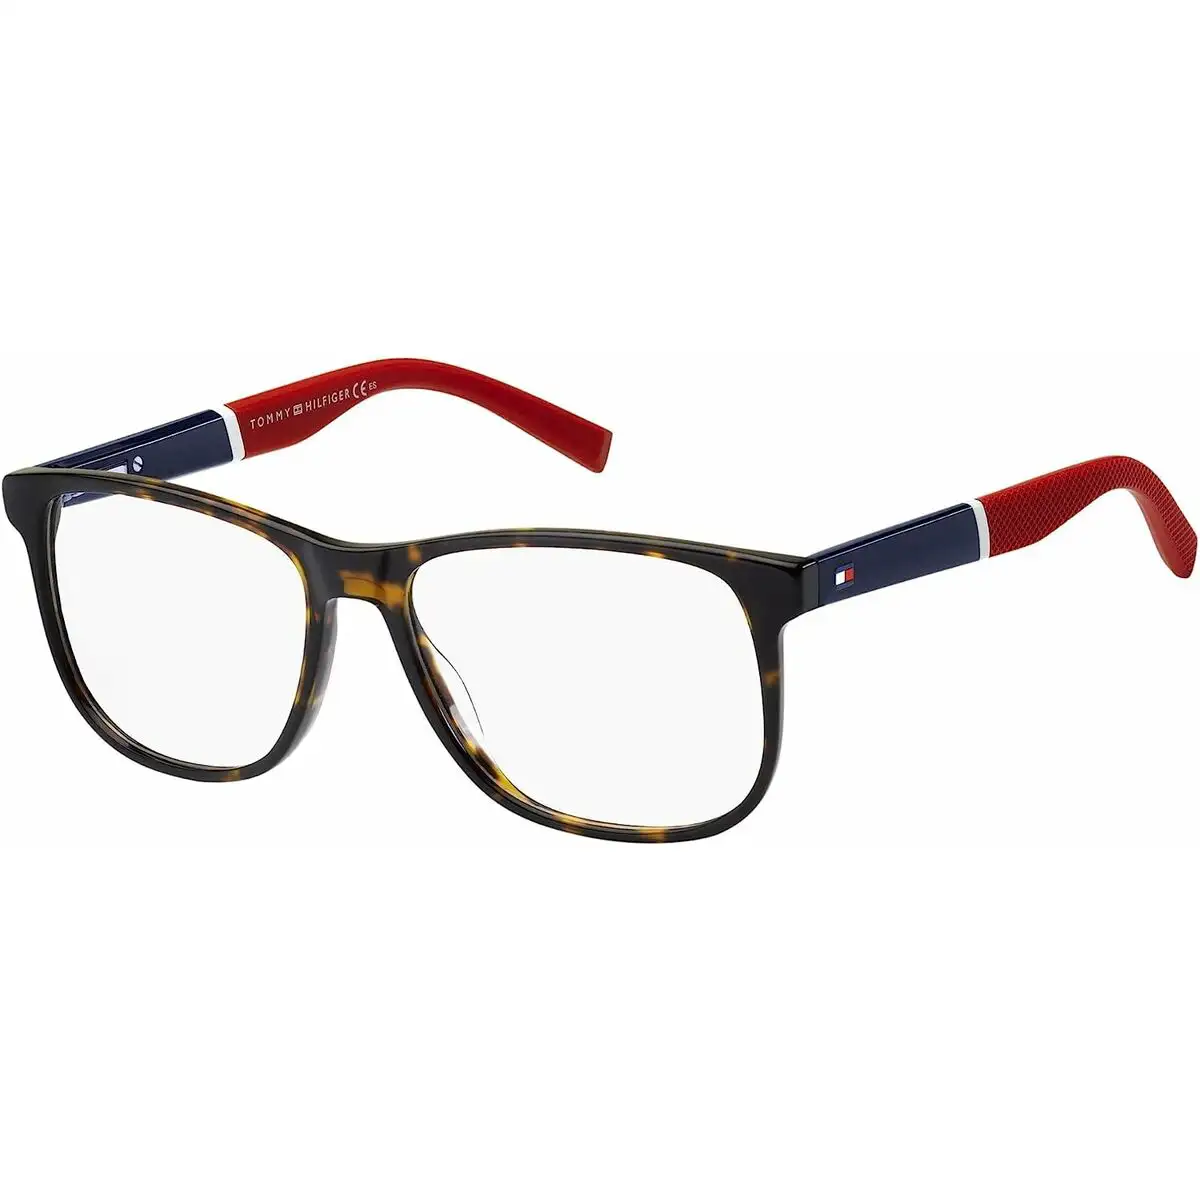 Monture de lunettes homme tommy hilfiger th 1908_8234. DIAYTAR SENEGAL - L'Art de Vivre le Shopping Inspiré. Parcourez notre catalogue et choisissez des produits qui reflètent votre passion pour la beauté et l'authenticité.